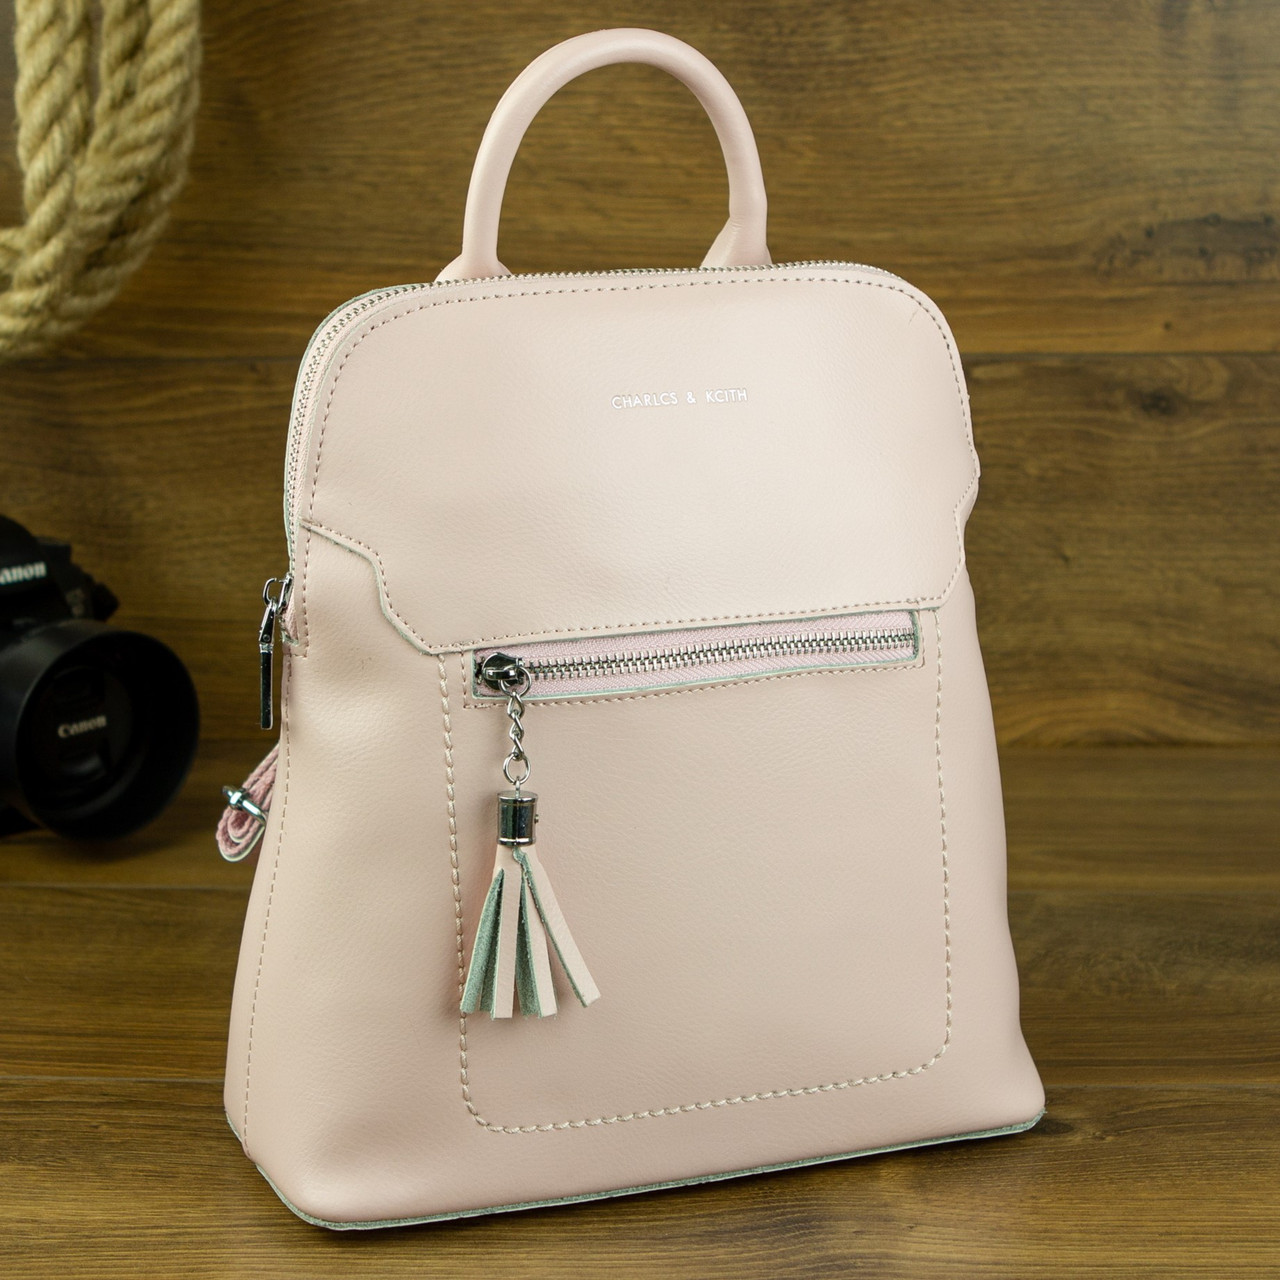 Жіночий шкіряний міський рюкзак світло-рожевого кольору, фото 1